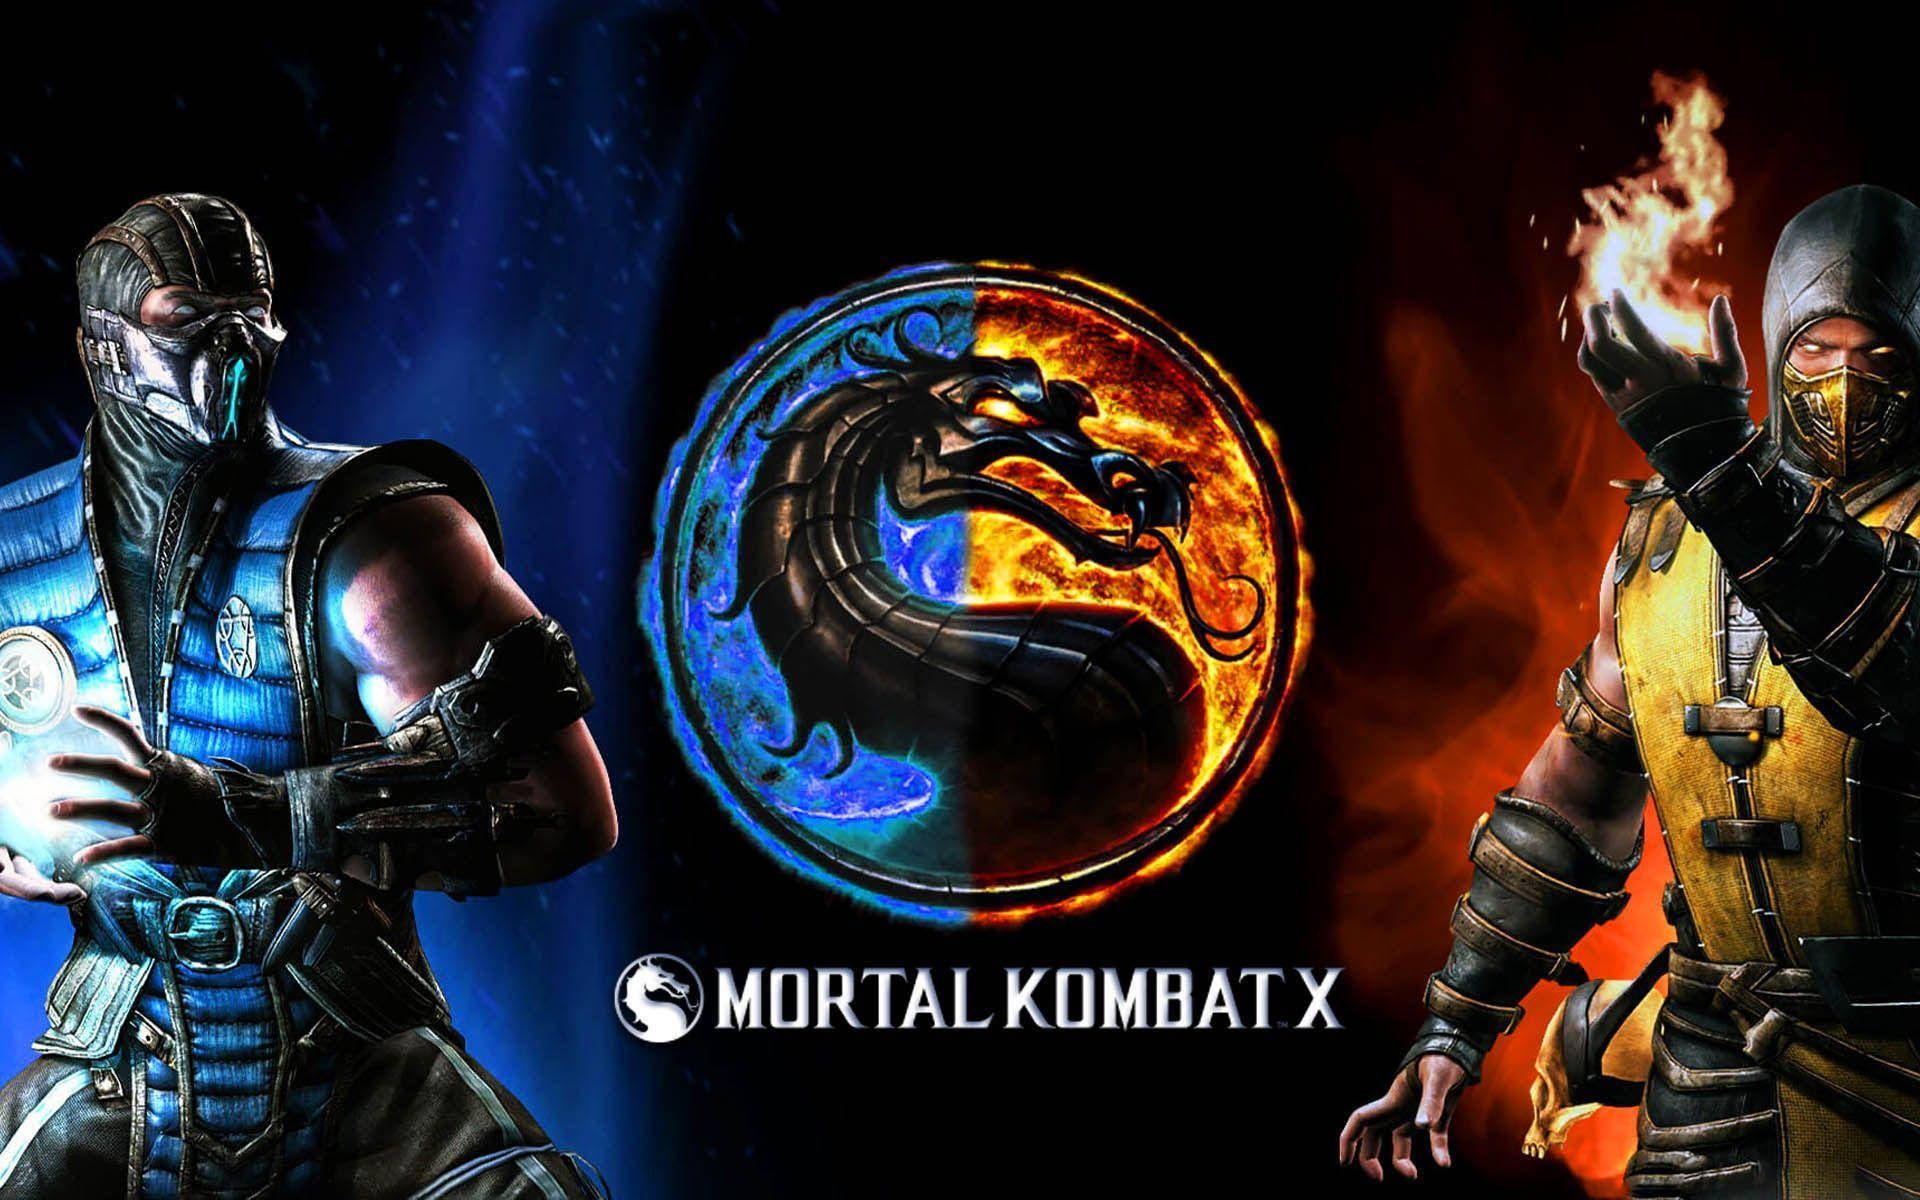 Mortal Kombat Scorpion Vs Sub Zero Side By Side